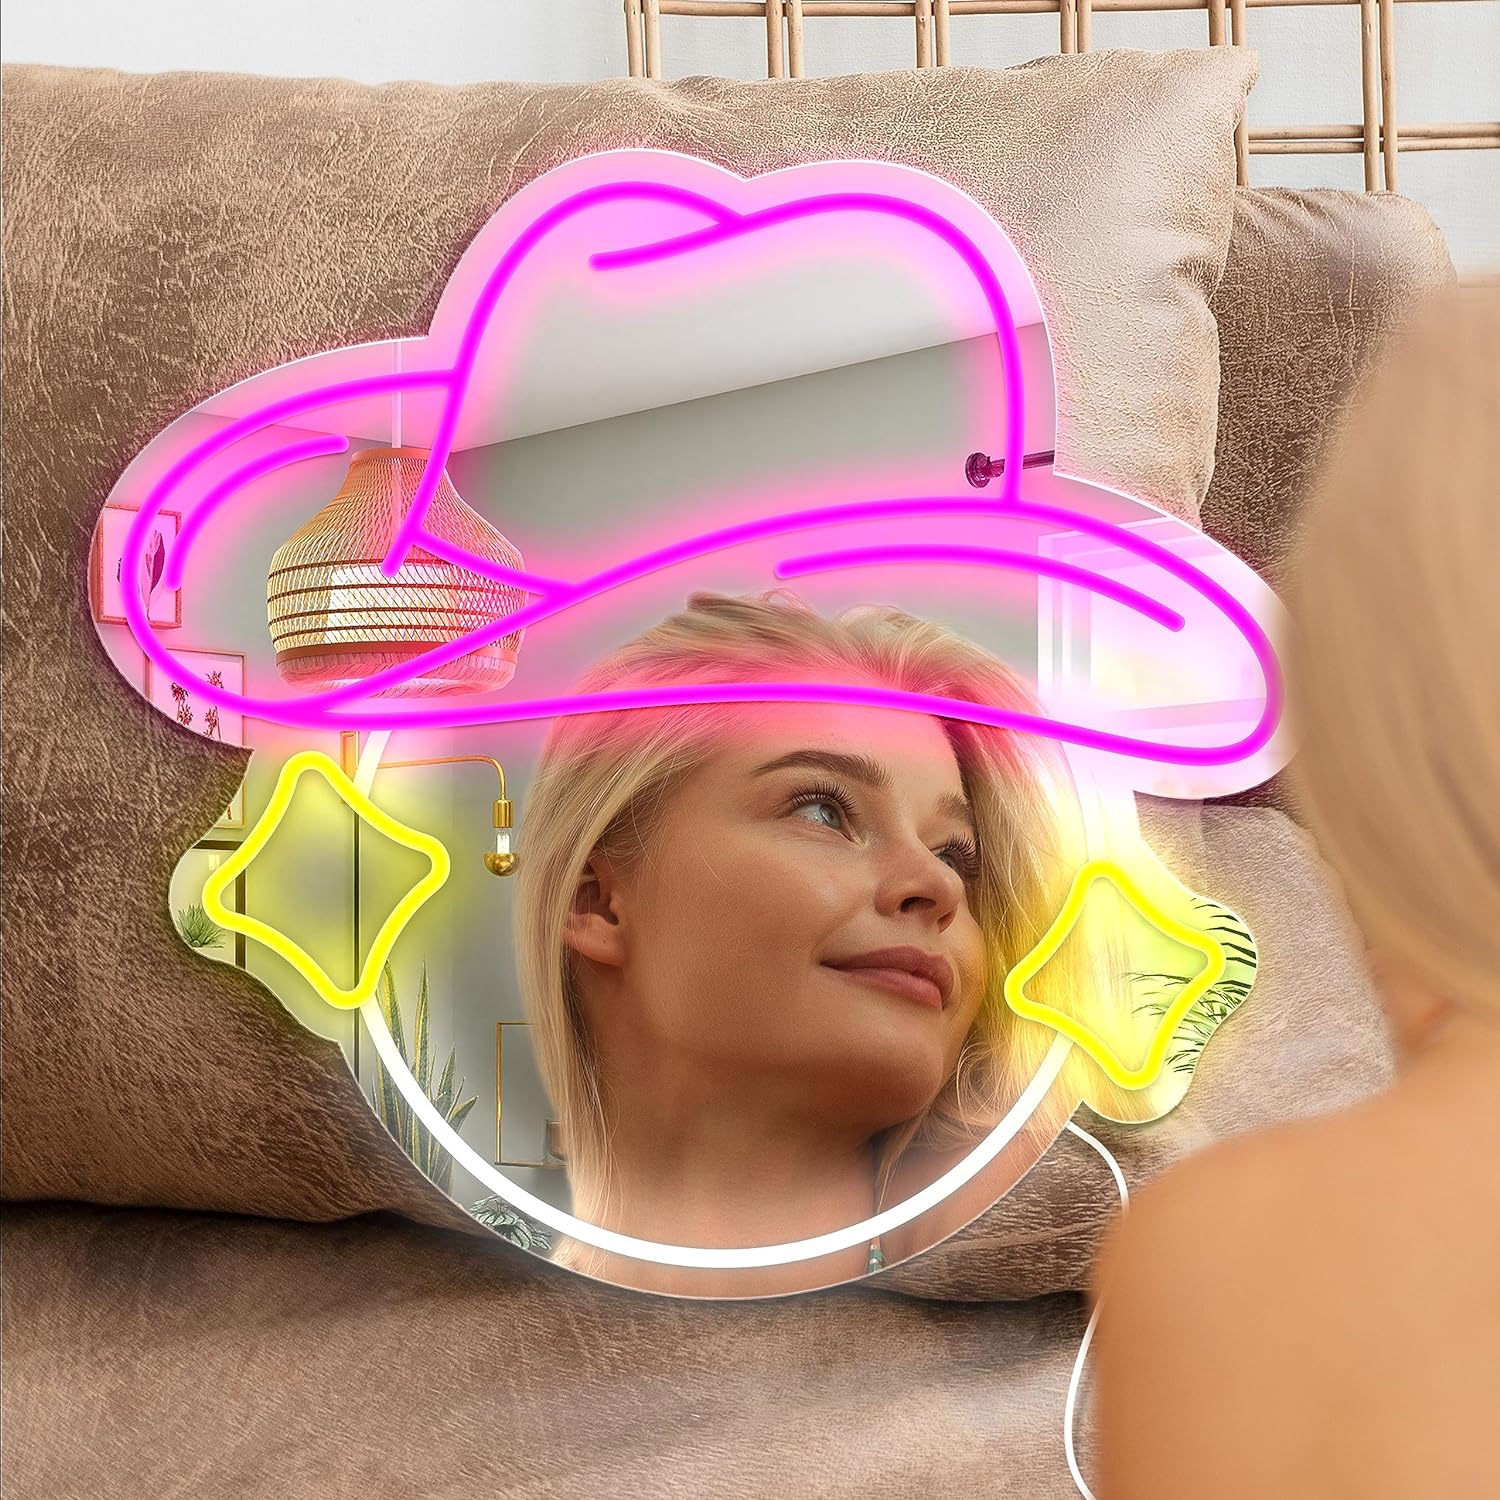 NEONIP-100% Handmade Cowgirl Hat Mirror Neon Light for Girls Bedroom